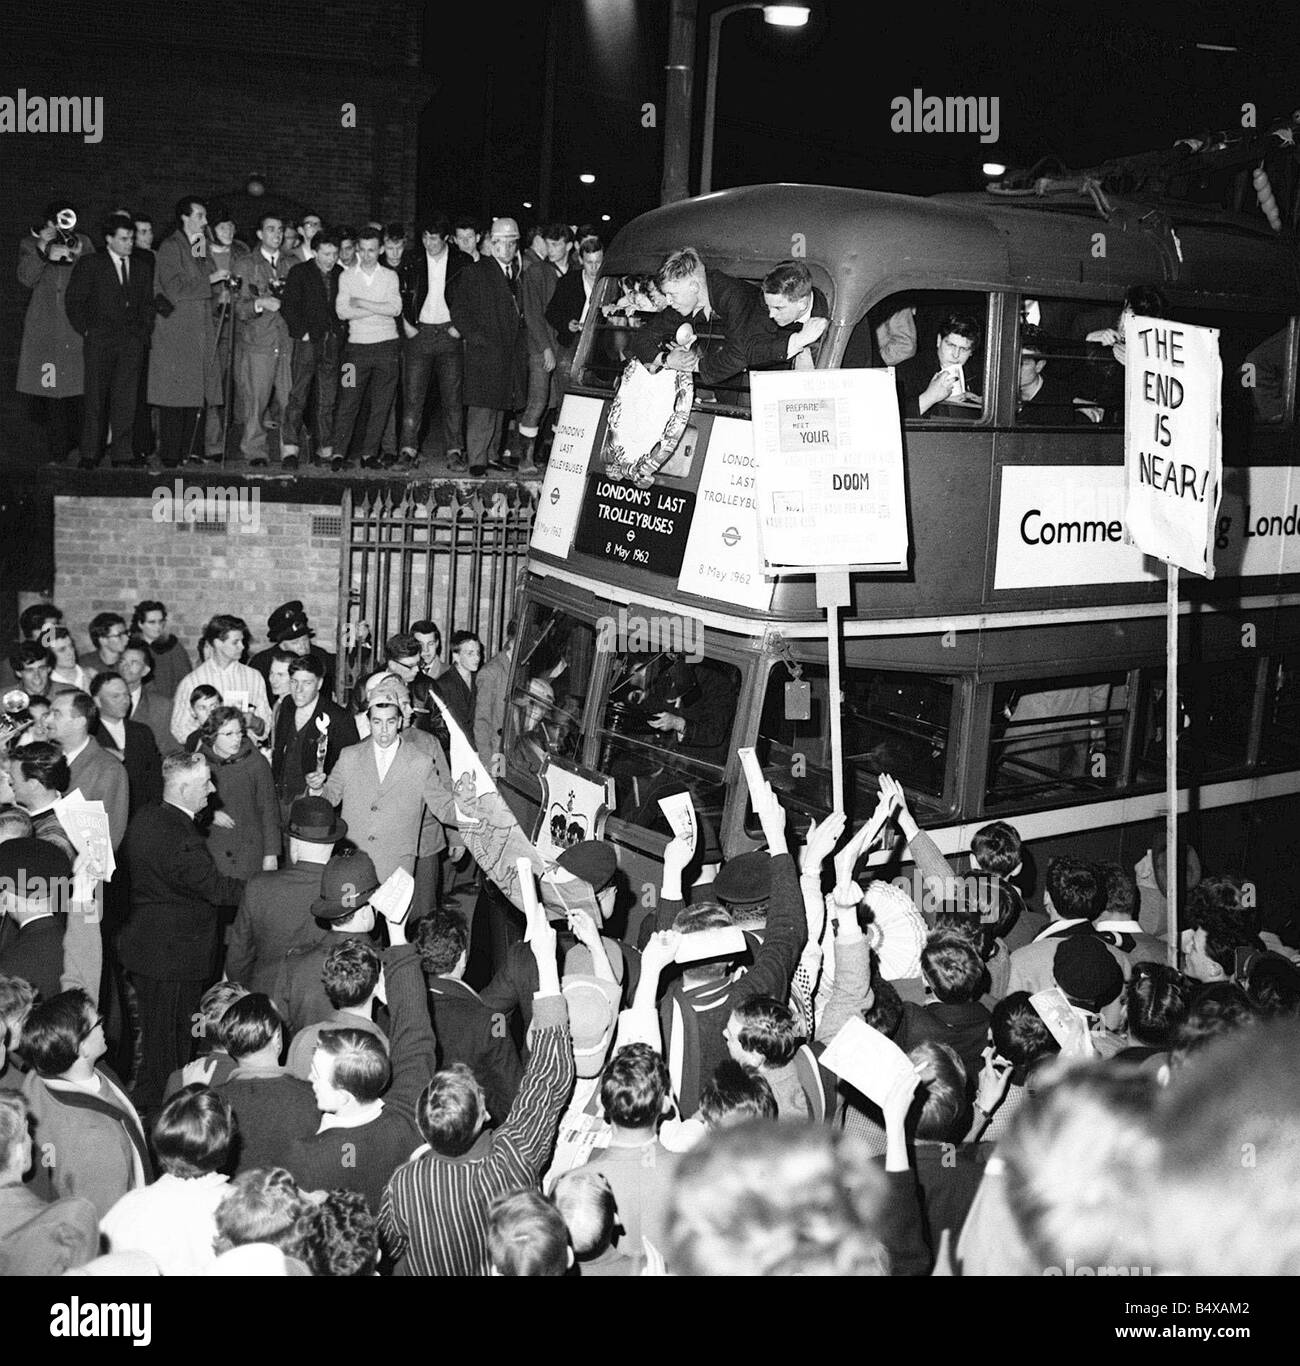 Letzte Reise in den Trollybus Mai 1962 Massen aufgedreht in großer Zahl zu einer endgültigen und sehr sentimental Jouney in ein Trolleybus der letzten o-Busse von London Transport am 8. Mai 1962 stillgelegt wurden, sie wurden ersetzt durch das Benzin angetrieben Busse Routemaster, einige davon noch im Einsatz auf Straßen Londons s heute jedoch sind während dies schien ein Ende einer Ära werden eine moderne Version von Straßenbahnen haben begonnen, um auf den Straßen von Großbritannien s Städte In Manchester wieder angezeigt, die Metro eröffnet in den frühen neunziger Jahren und wurde sehr erfolgreich und Croydon im Süden Londons, wird Stockfoto